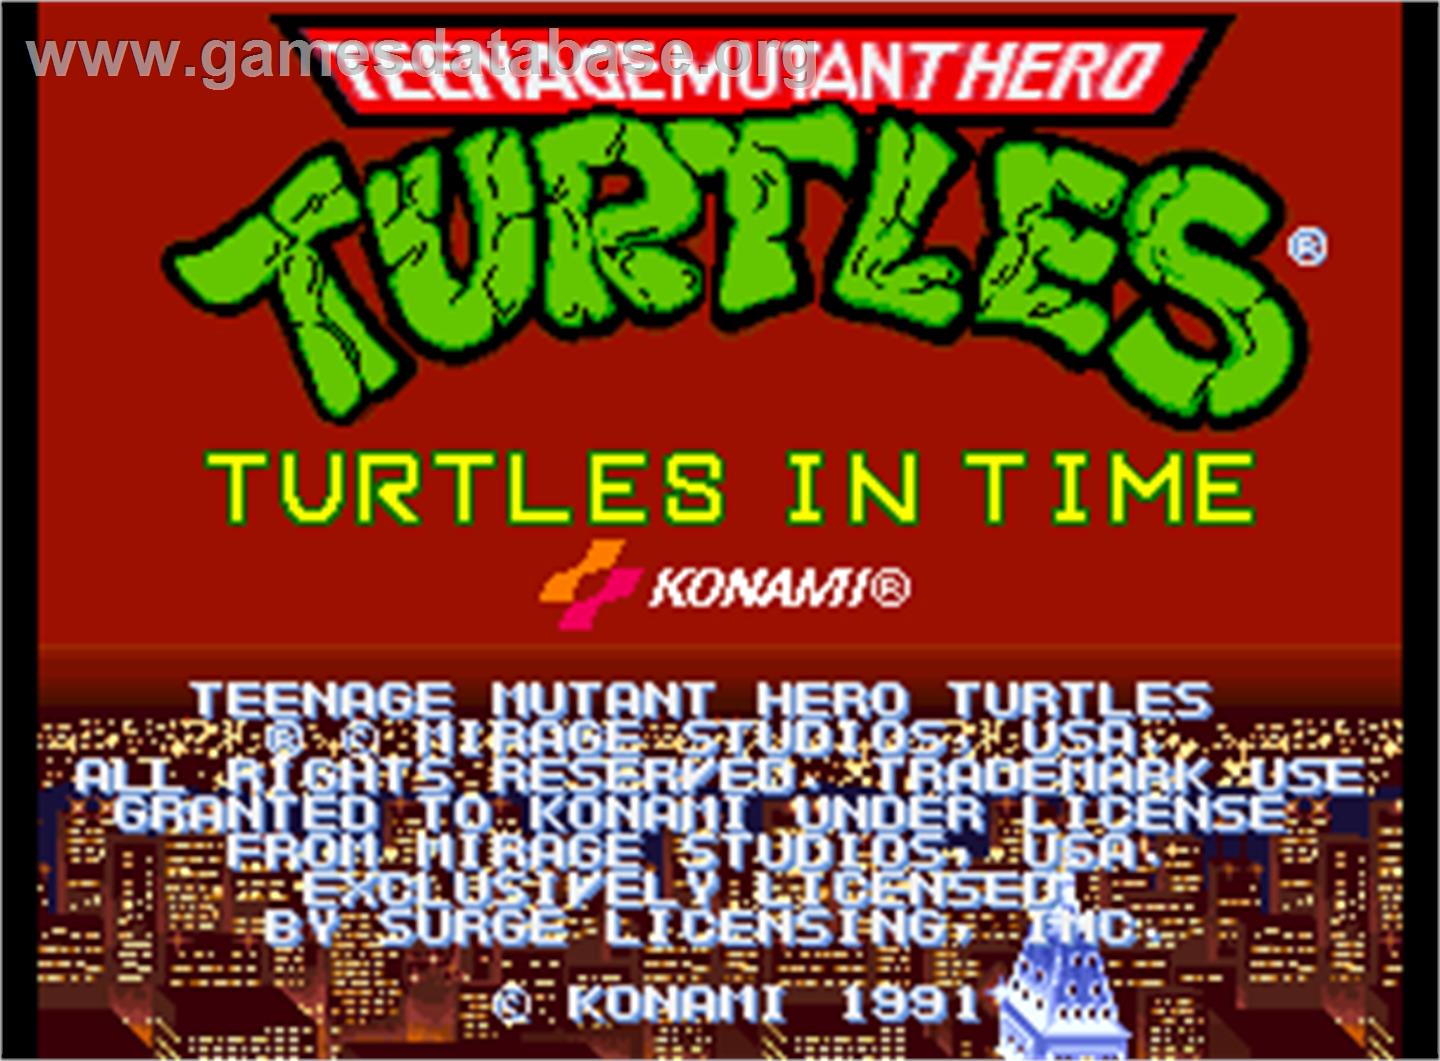 Teenage Mutant Hero Turtles - Turtles in Time - Arcade - Artwork - Title Screen